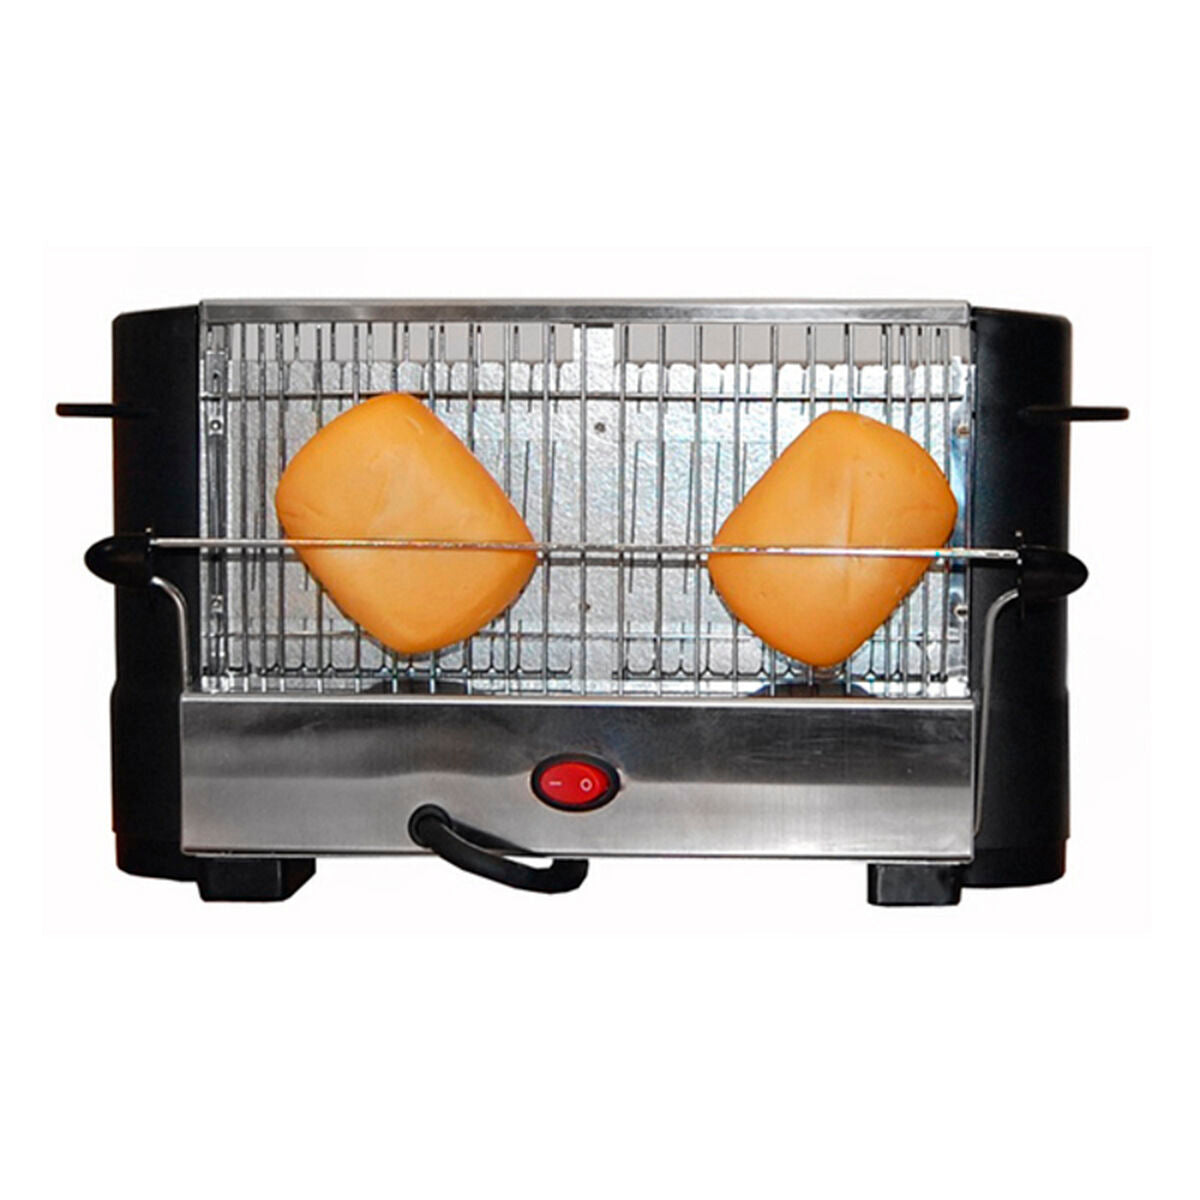 Toaster COMELEC Bb_S0402062 800W 800 W 750 W - CA International 